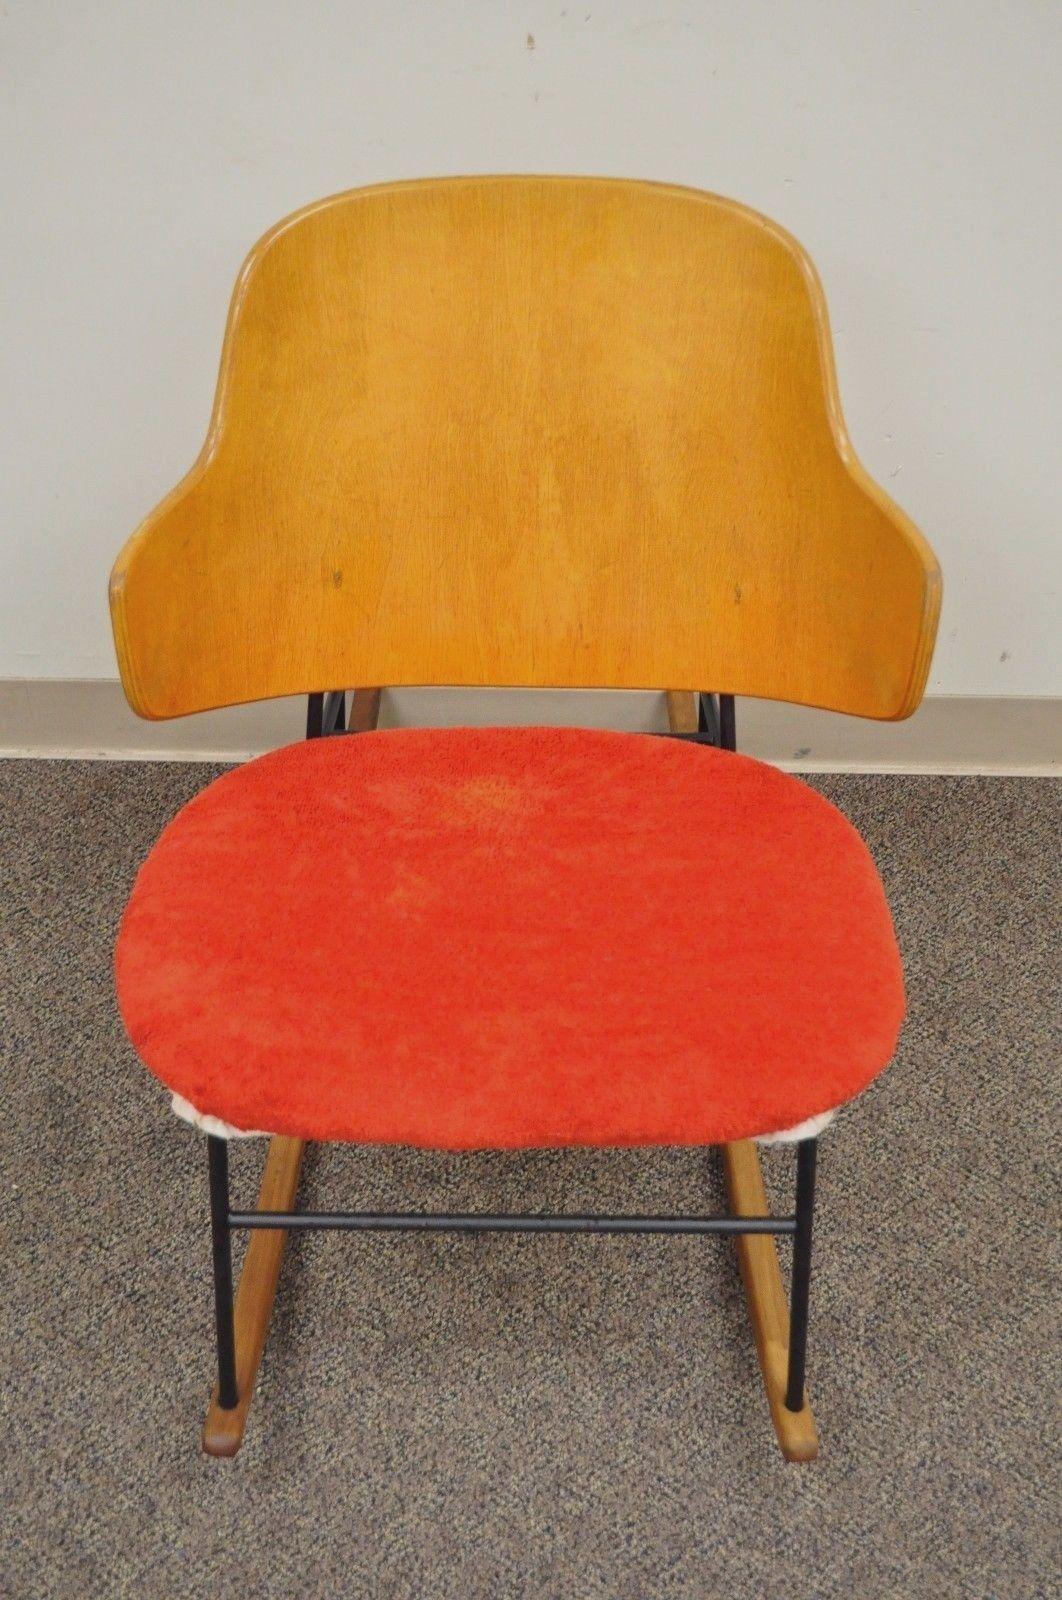 kofod larsen rocking chair